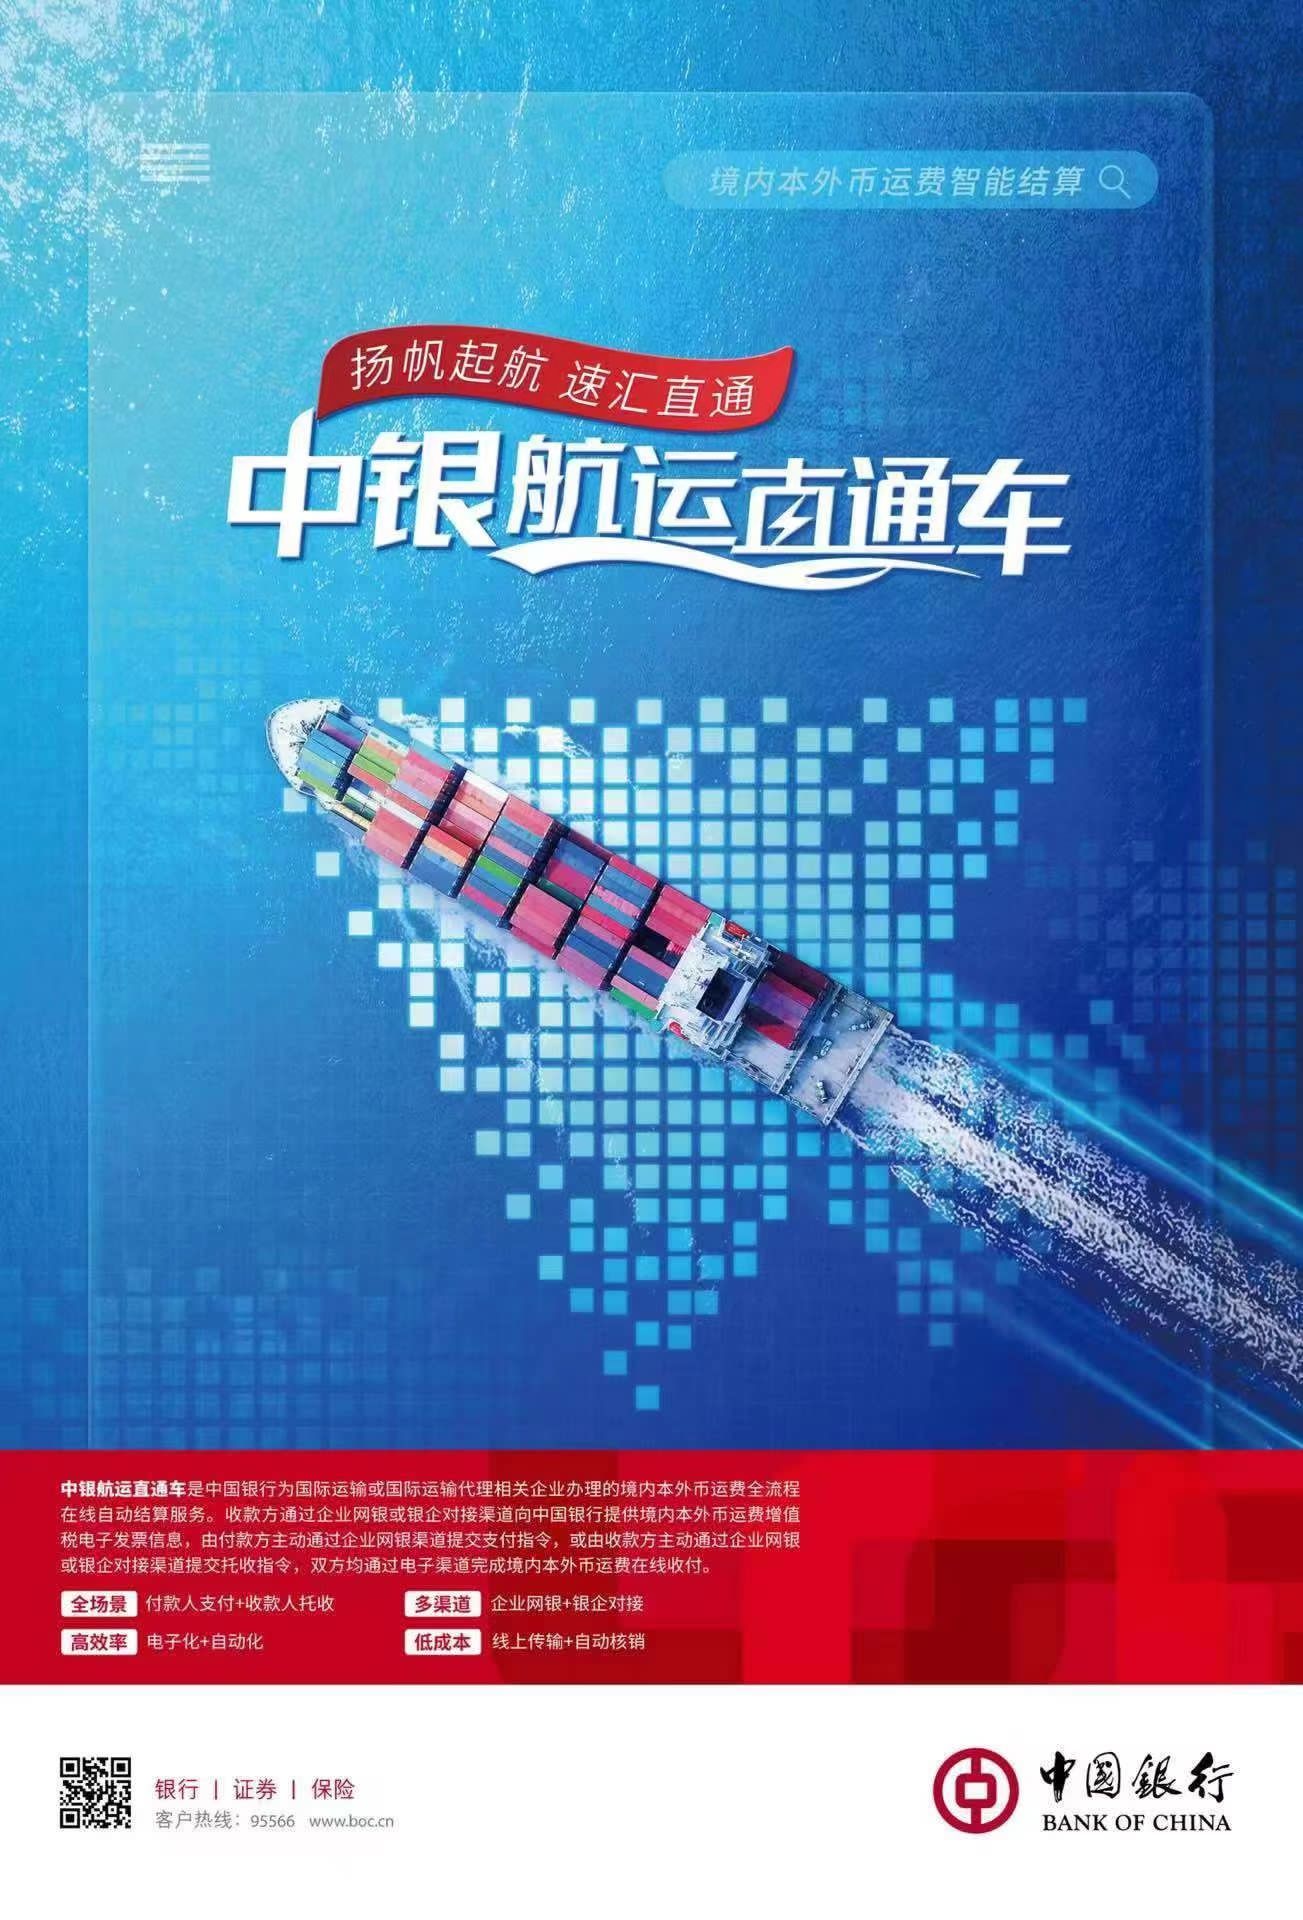 中国银行江苏省分行成功落地全国首笔全流程数字化“中银航运直通车”业务